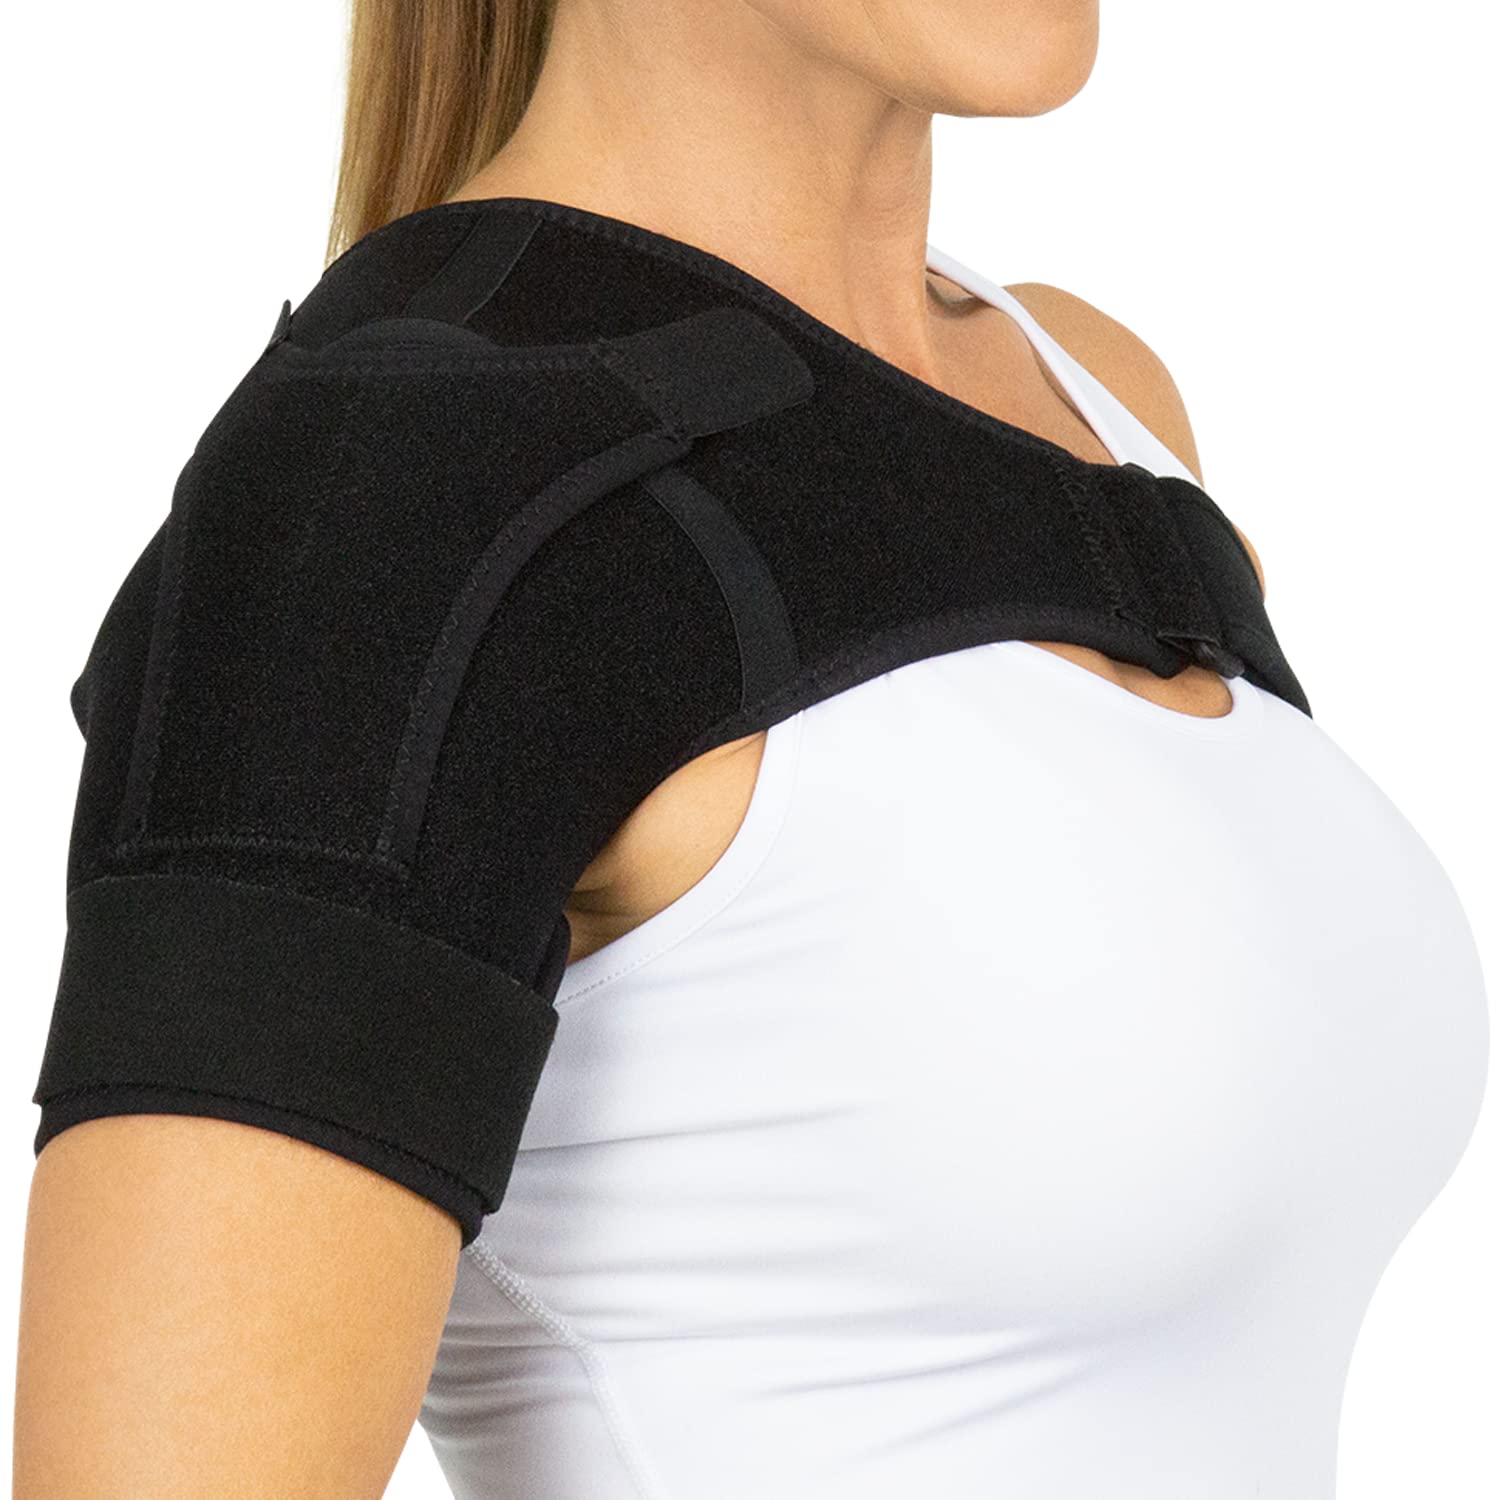 Shoulder Support Brace - One Size